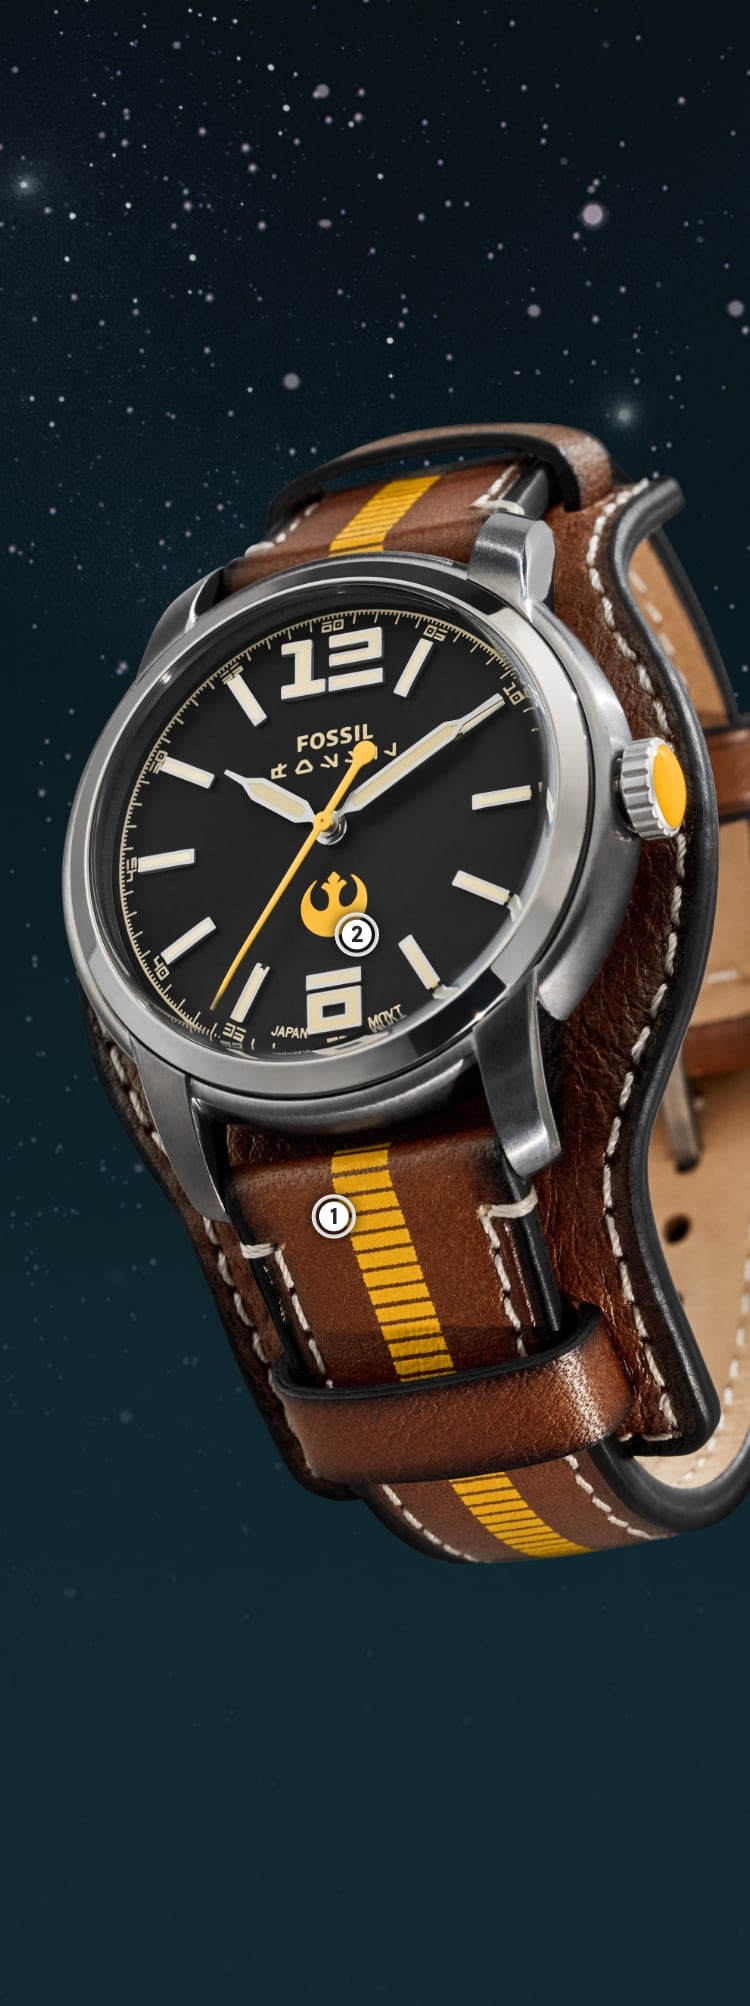 Eine Nahaufnahme einer silberfarbenen Uhr mit einem braunen Lederband und goldgelben Details.